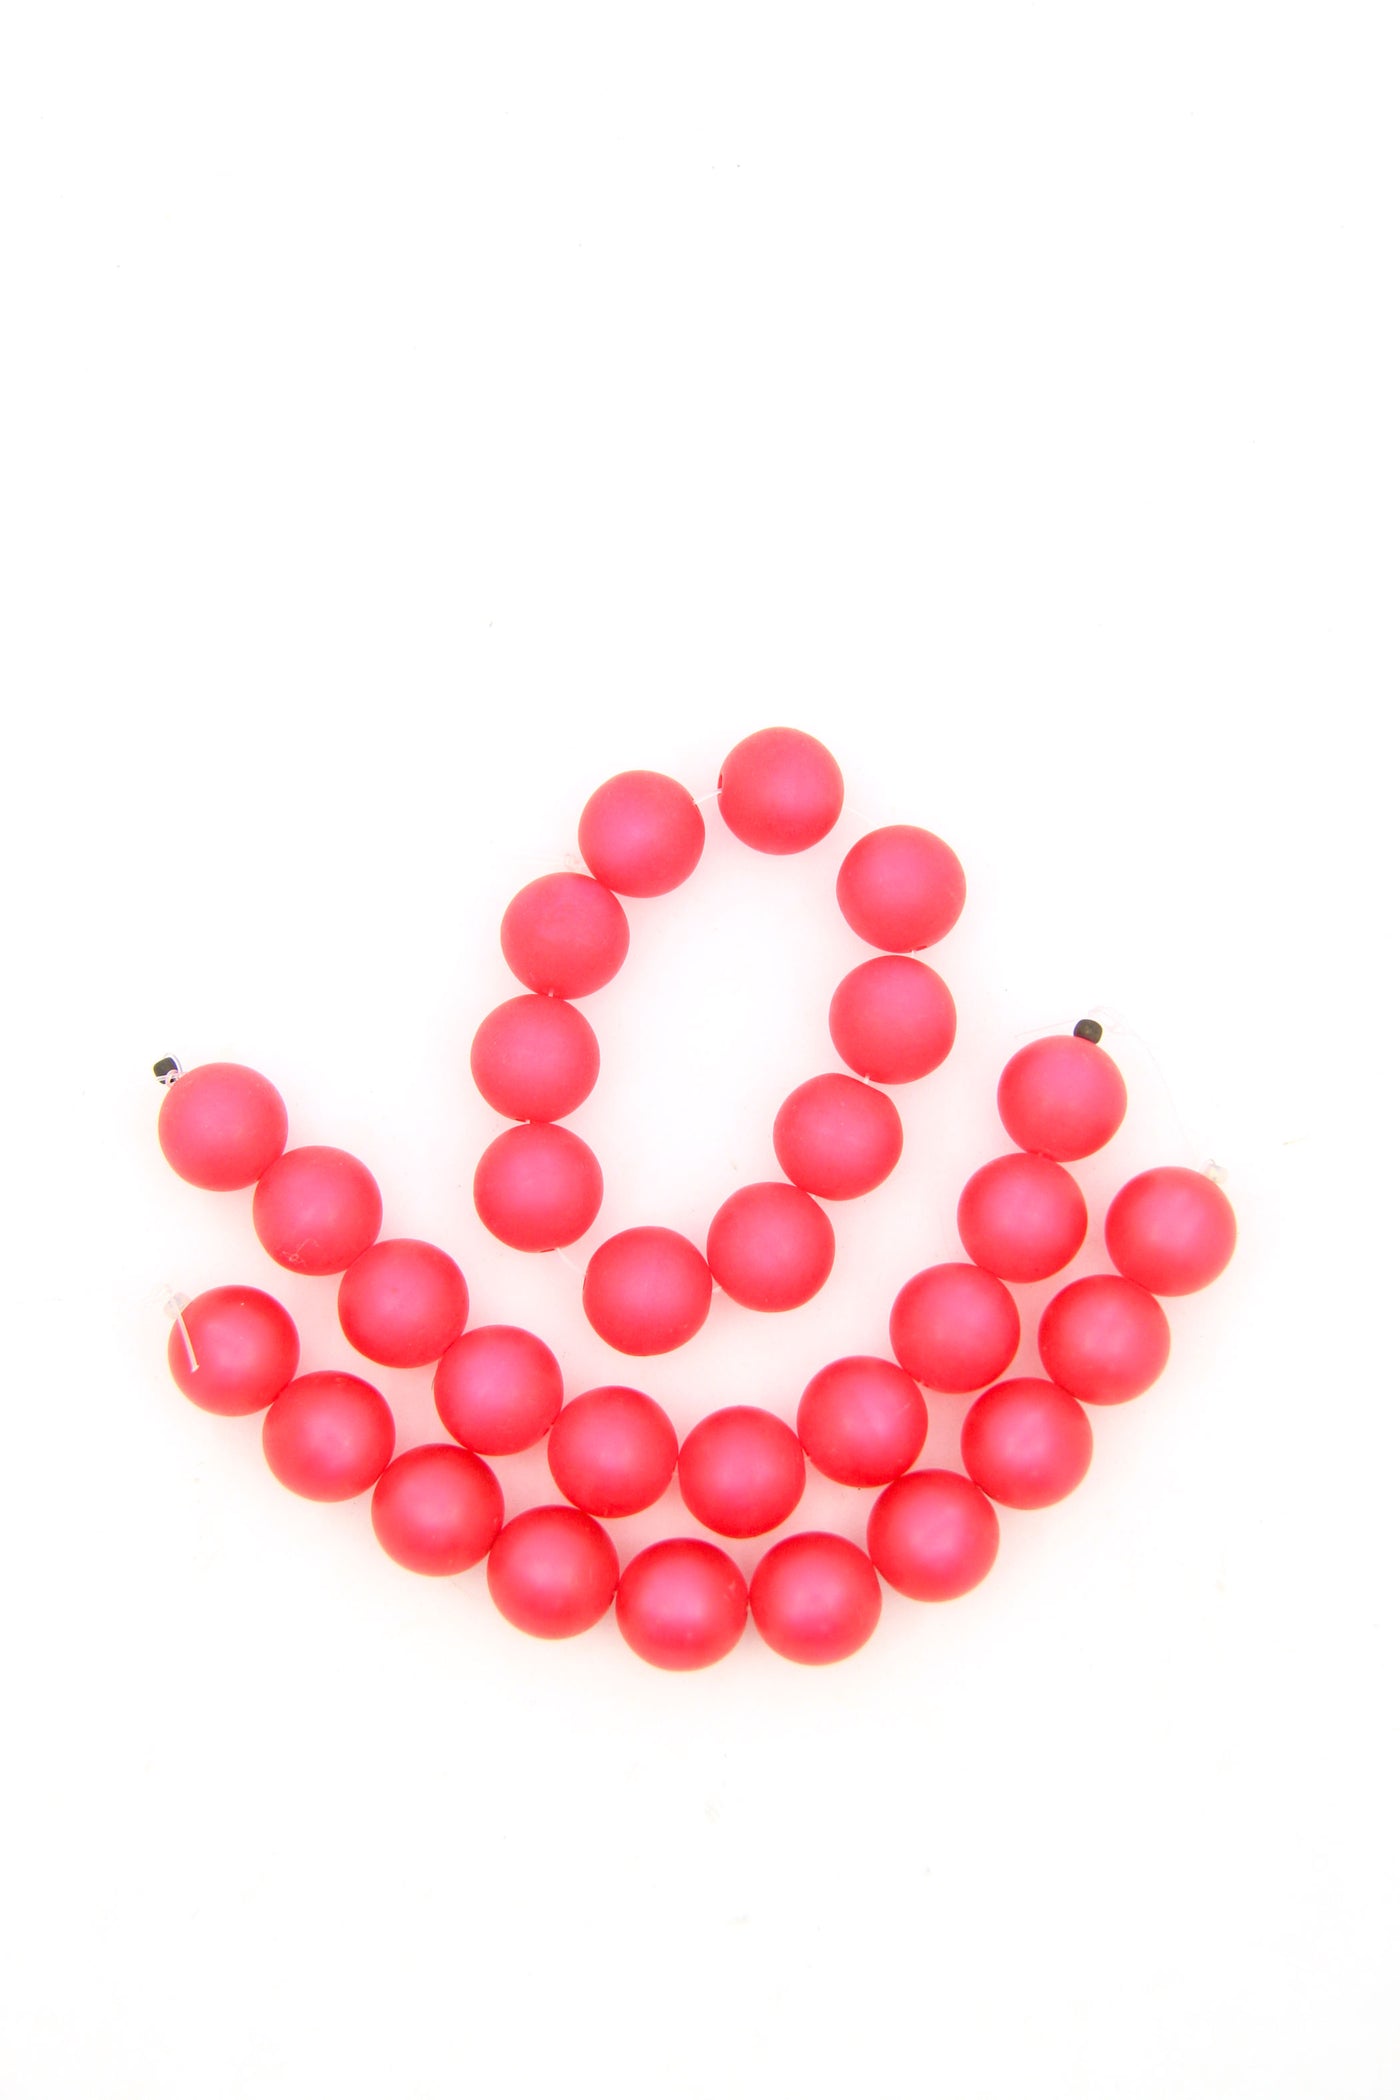 Satin Rose Pink German Resin Round Beads, 14mm, 10 Beads, Vintage Resin Beads